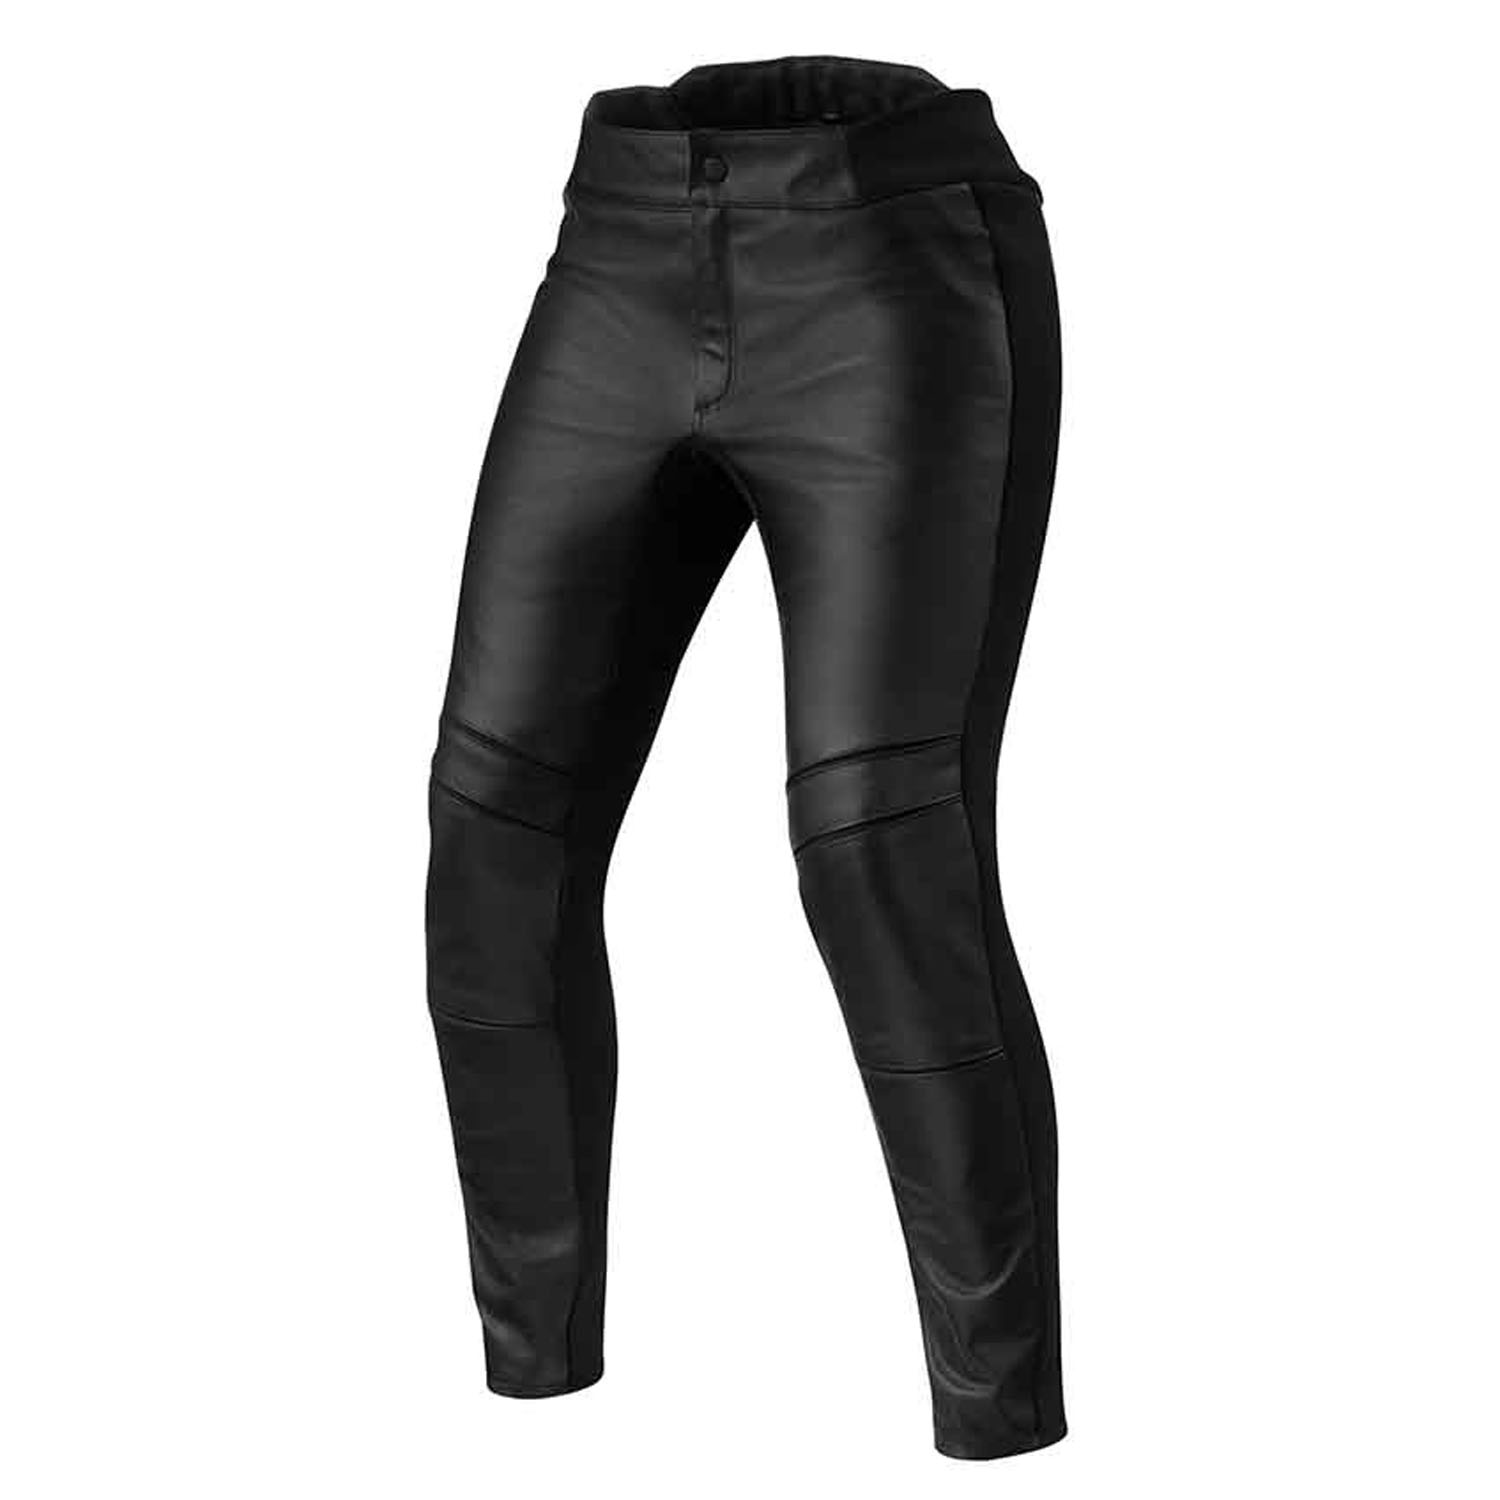 Image of EU REV'IT! Maci Ladies Black Short Motorcycle Pants Taille 38